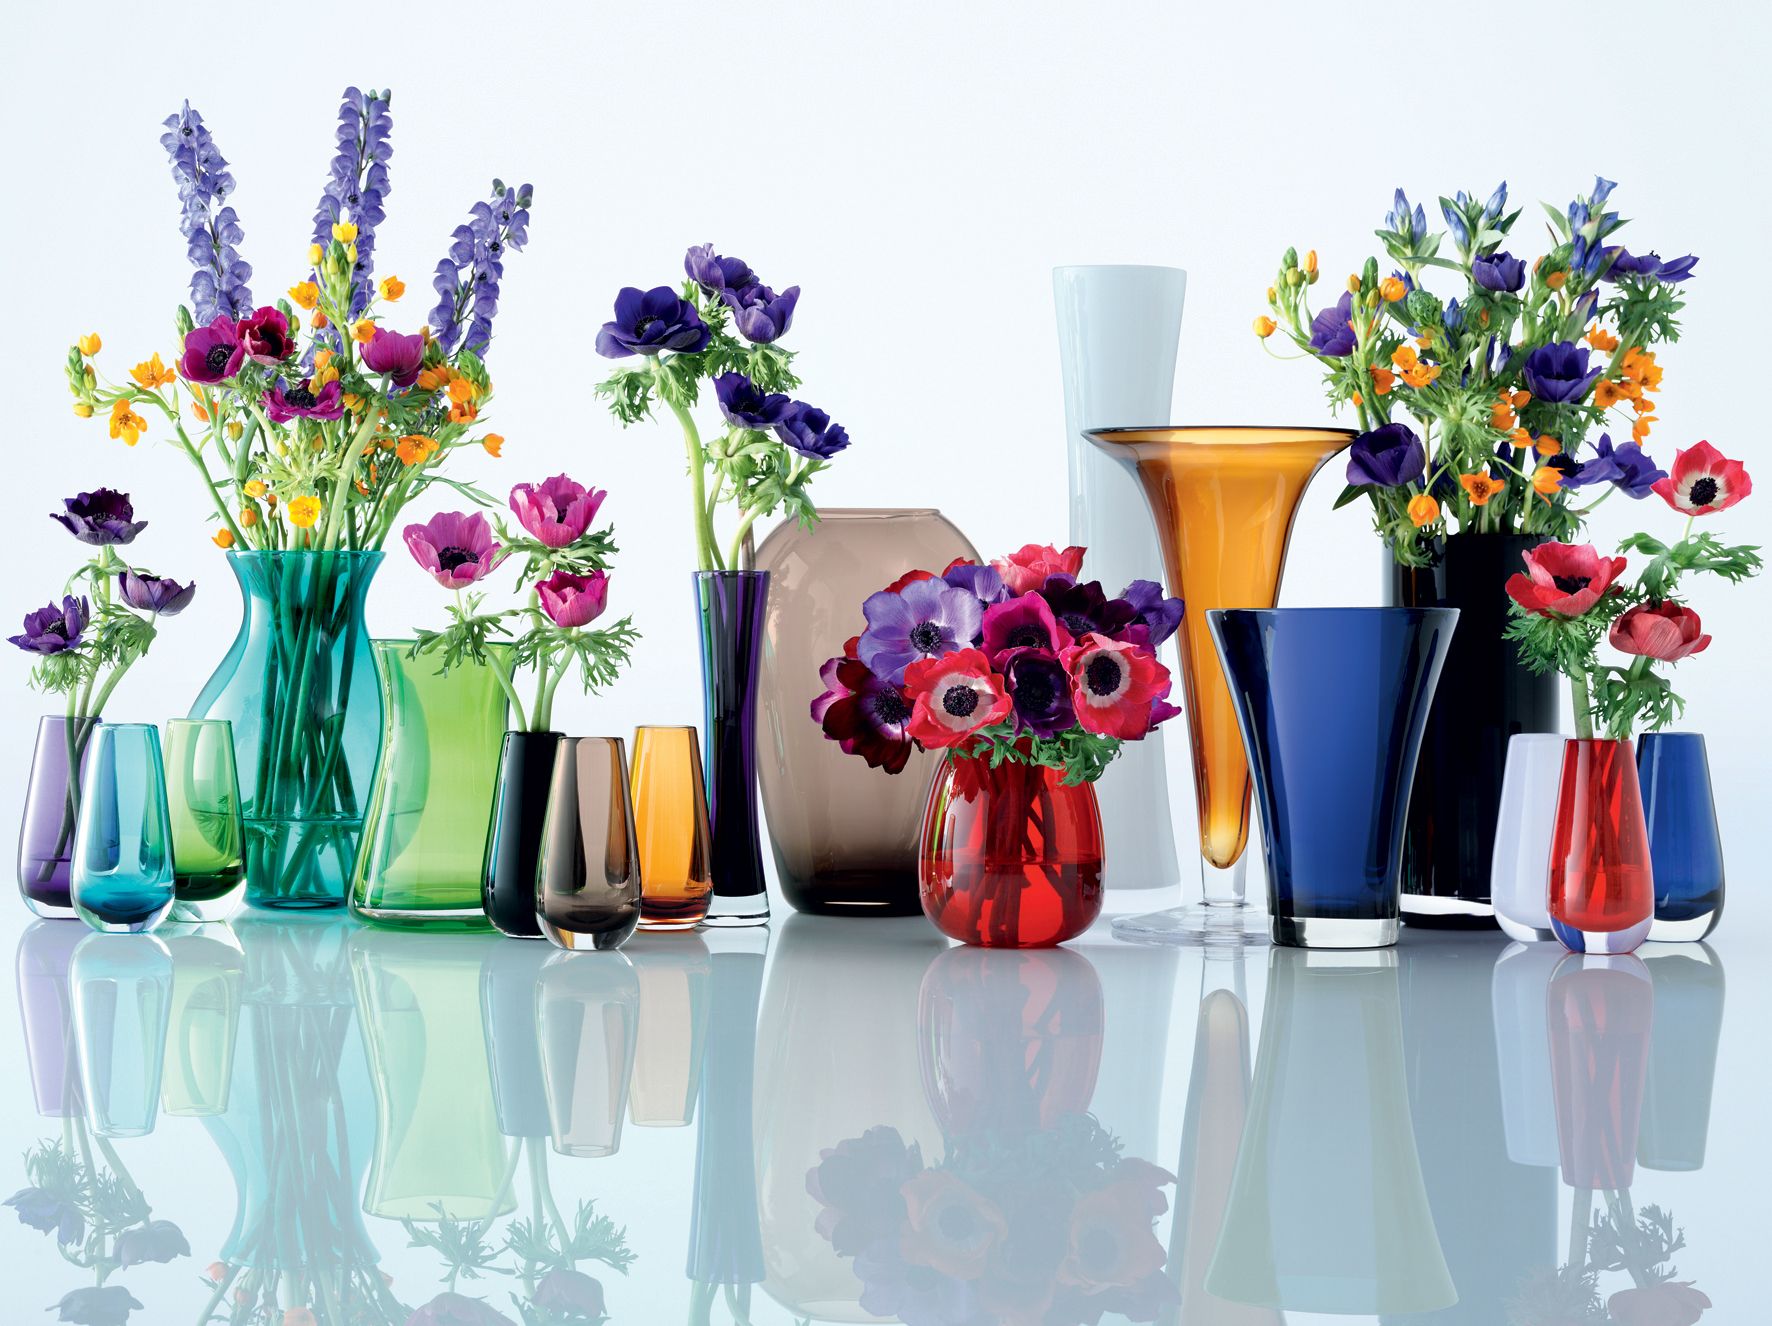 Формы ваз: выбираем красивые большие синие и серебряные изделия для уличных цветов и декора интерьера